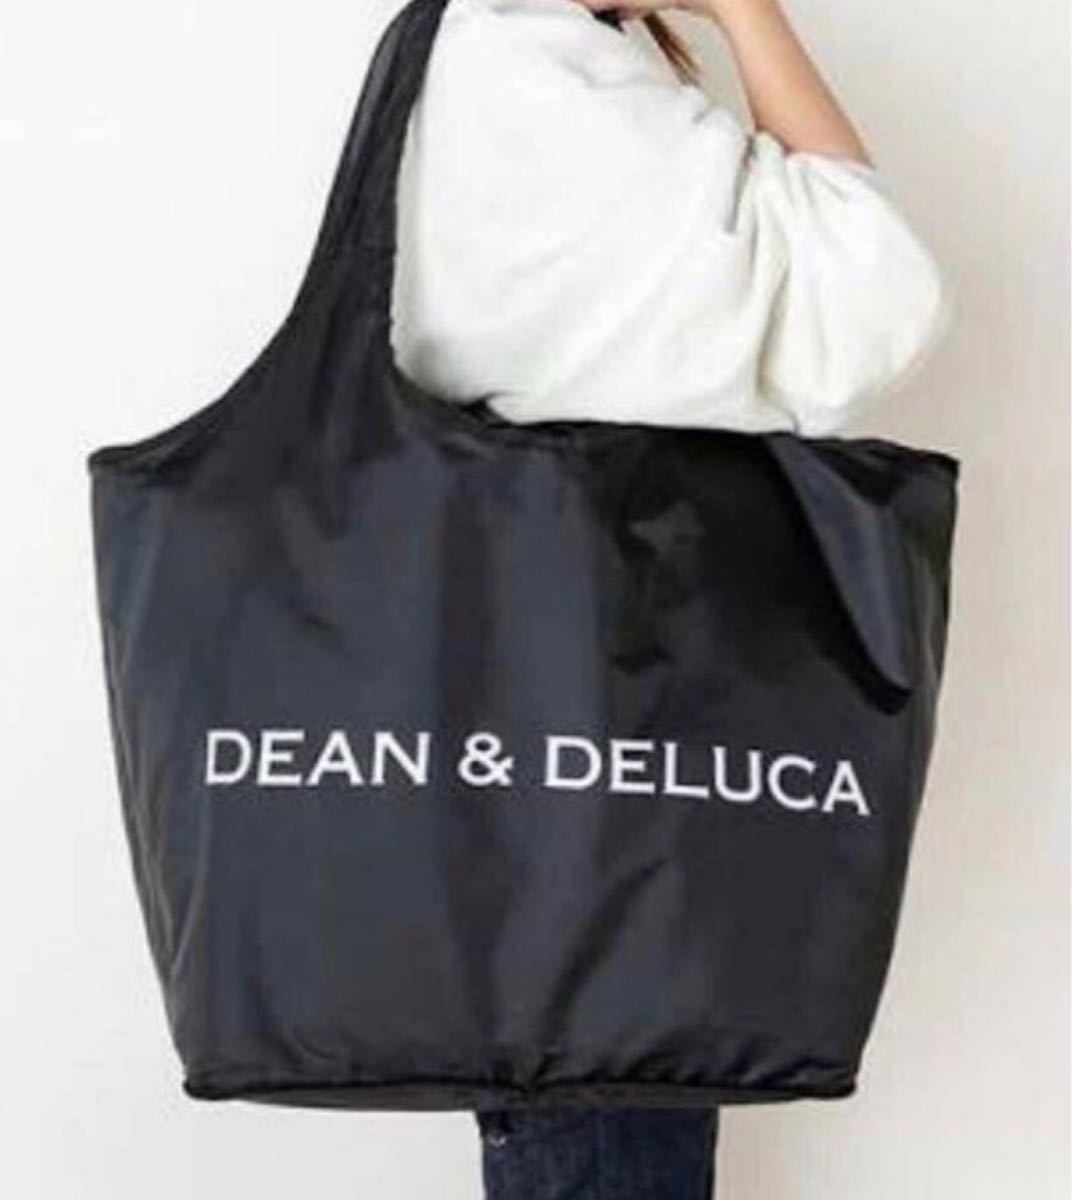  DEAN & DELUCA レジカゴバッグ + 保冷ボトルケース2点セット エコバッグ